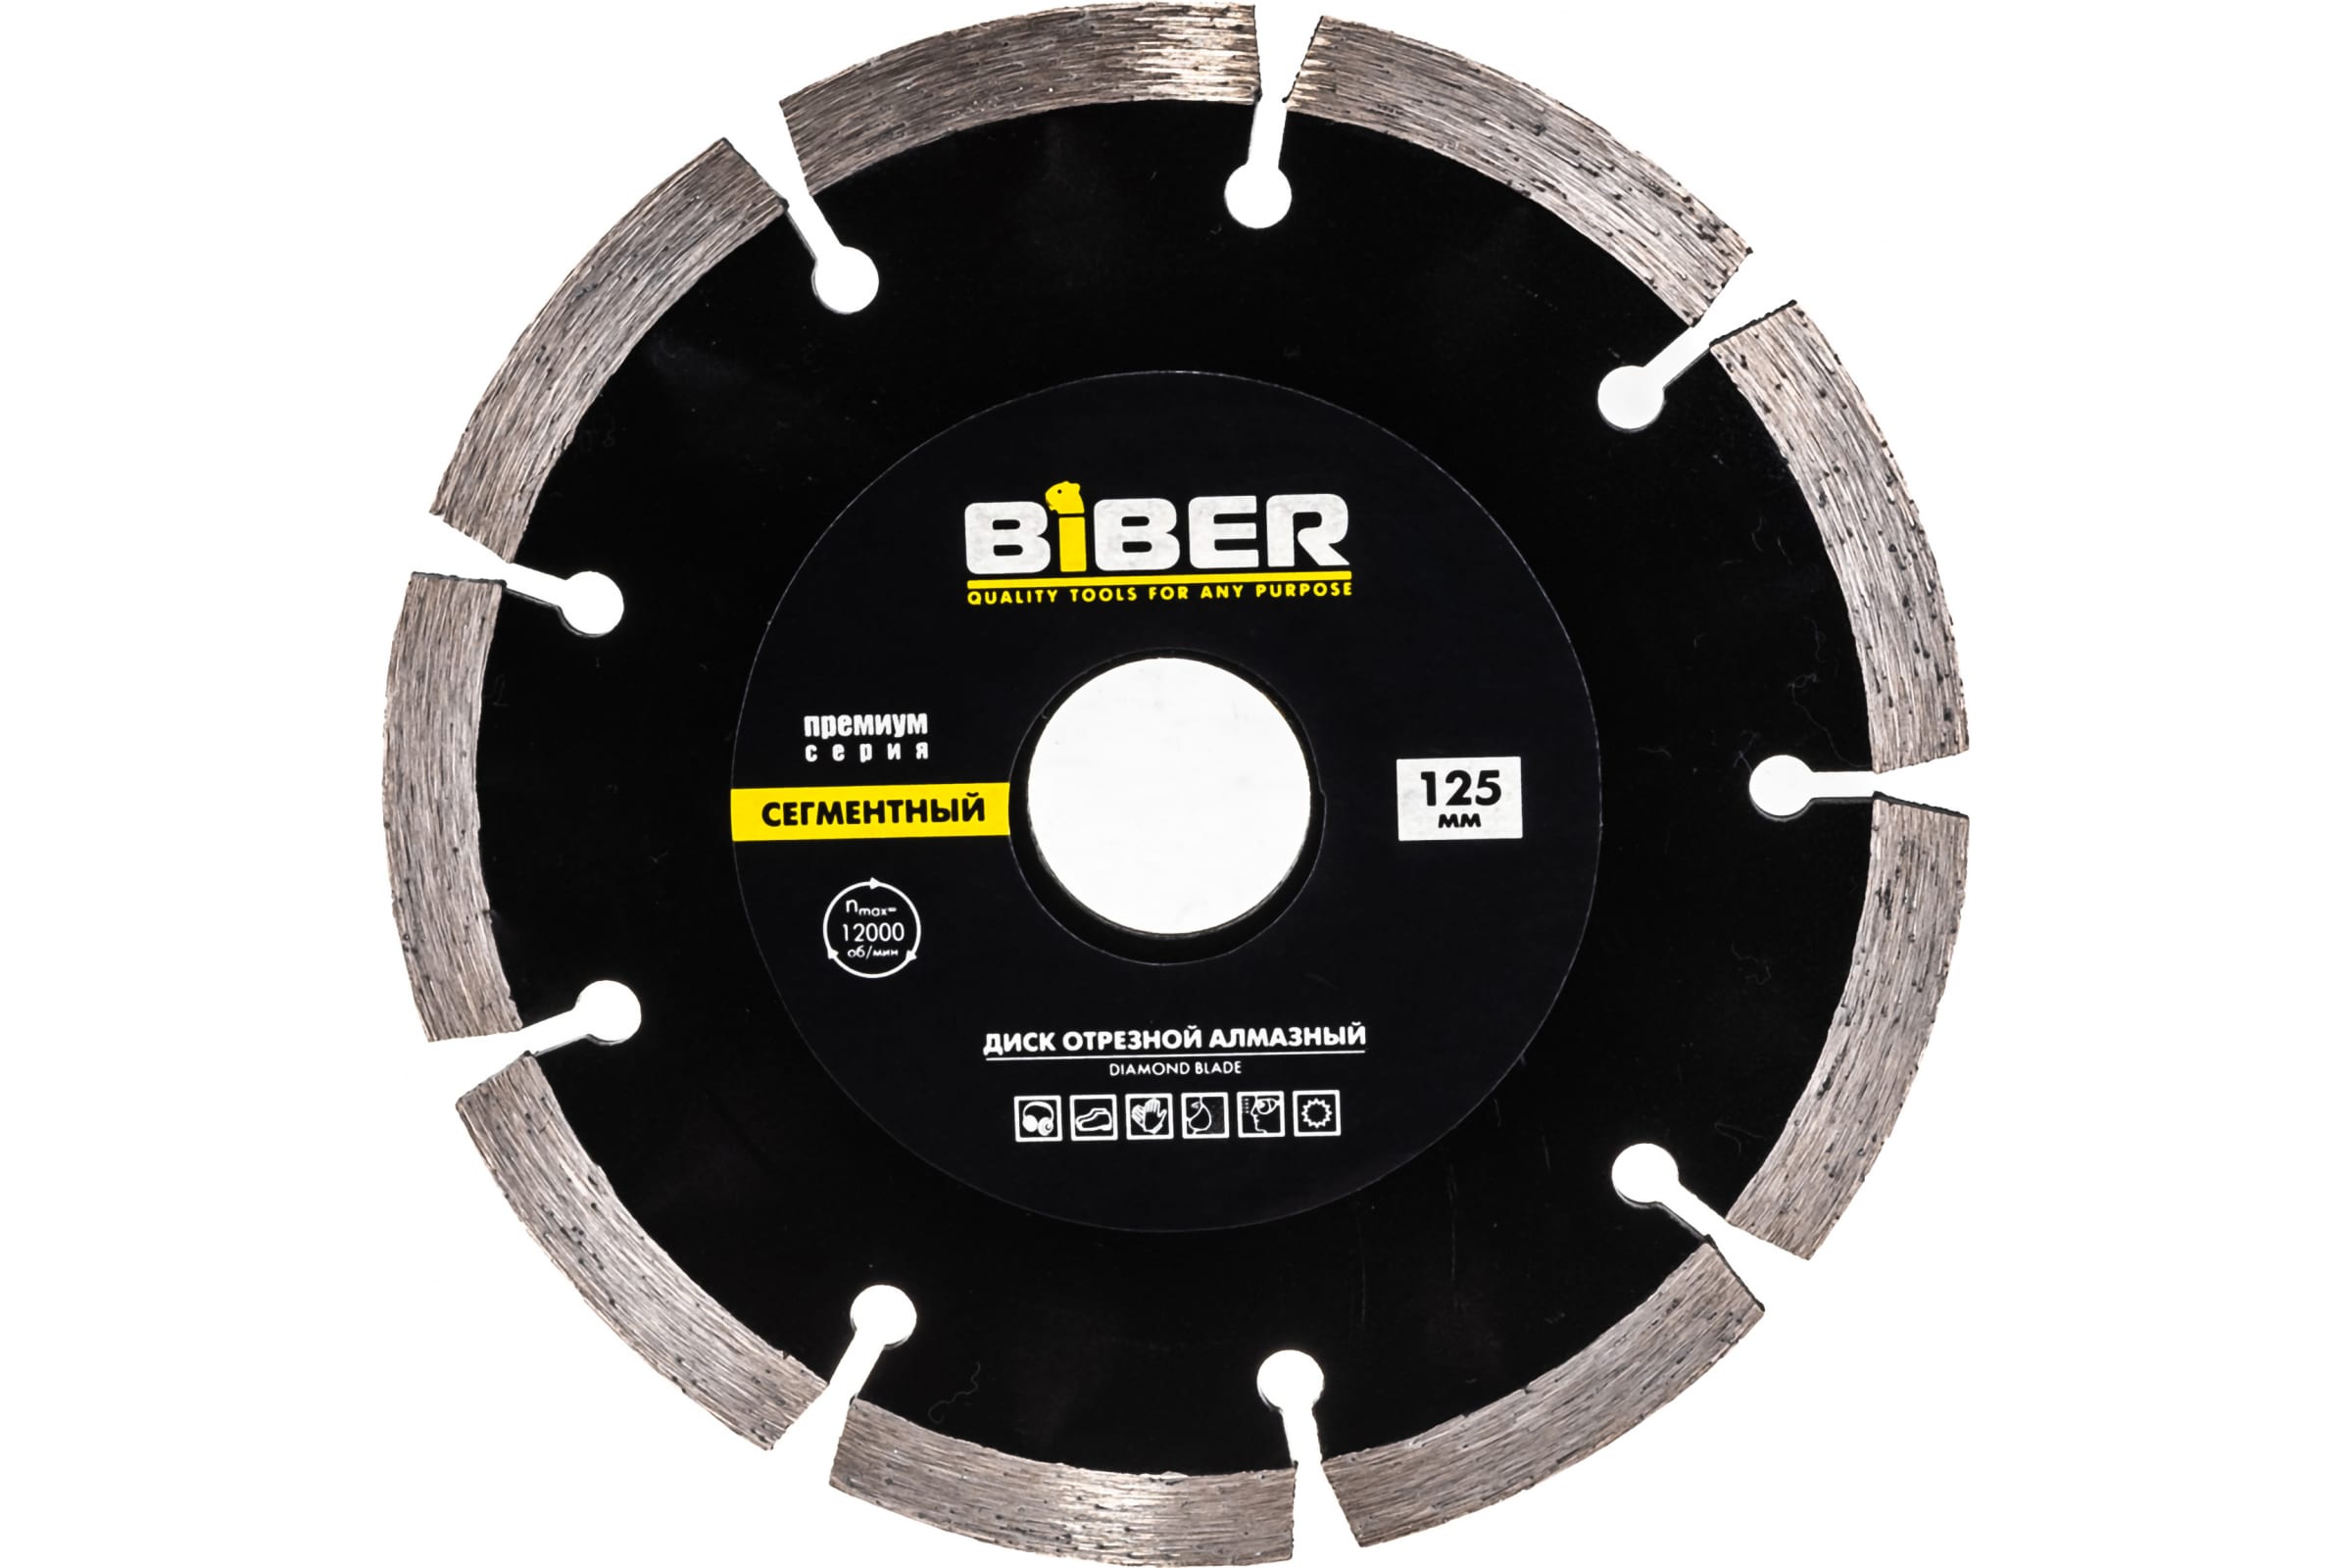 Biber Диск алмазный сегментный Премиум 125мм 70263 тов-039552 наждачный брусок biber